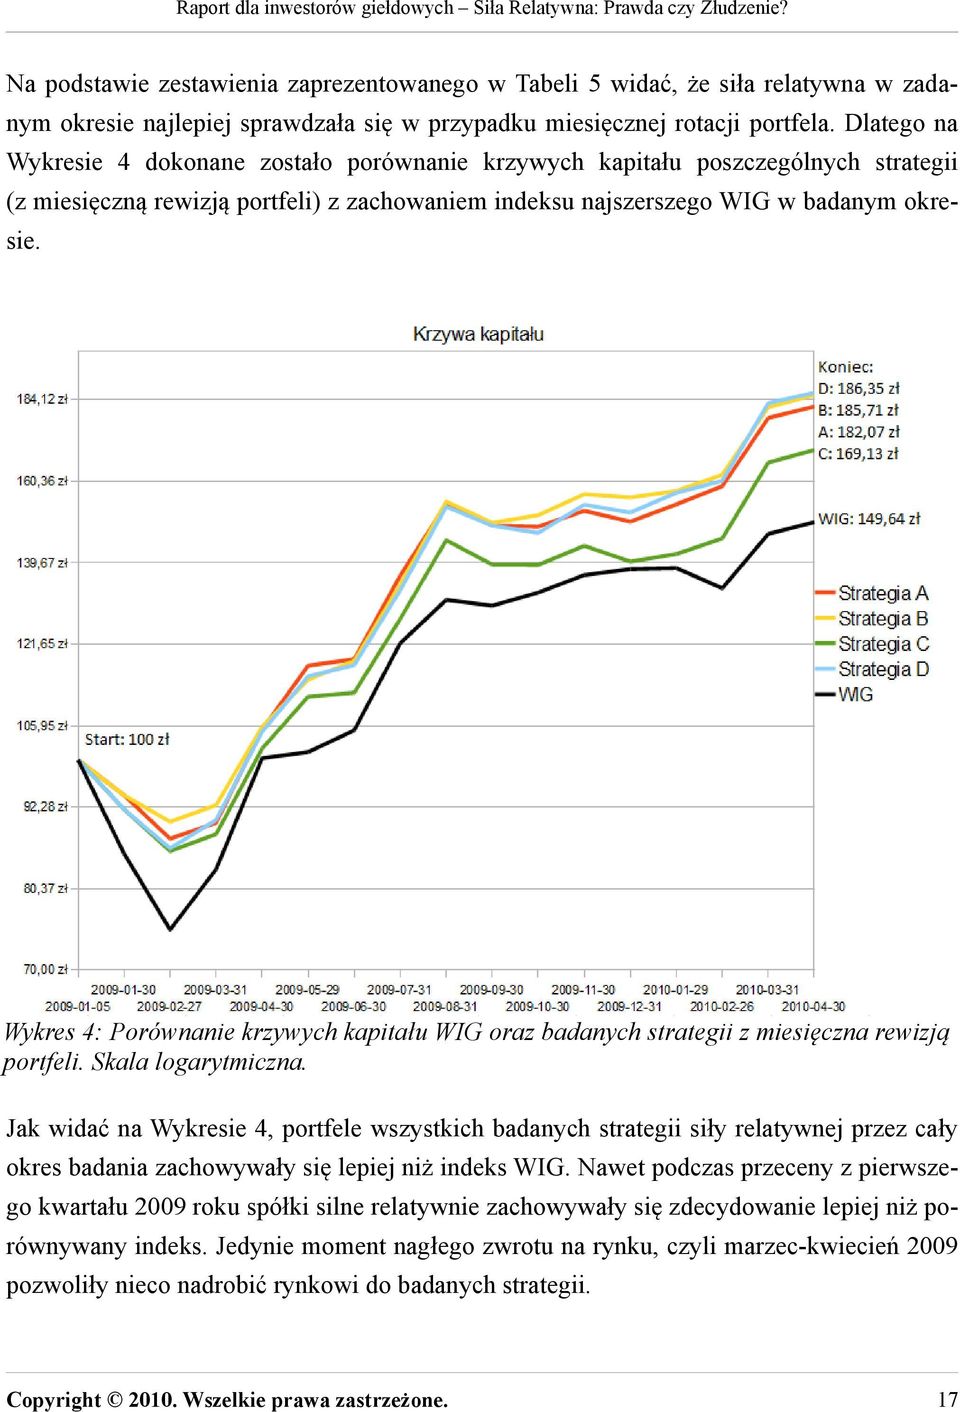 Wykres 4: Porównanie krzywych kapitału WIG oraz badanych strategii z miesięczna rewizją portfeli. Skala logarytmiczna.